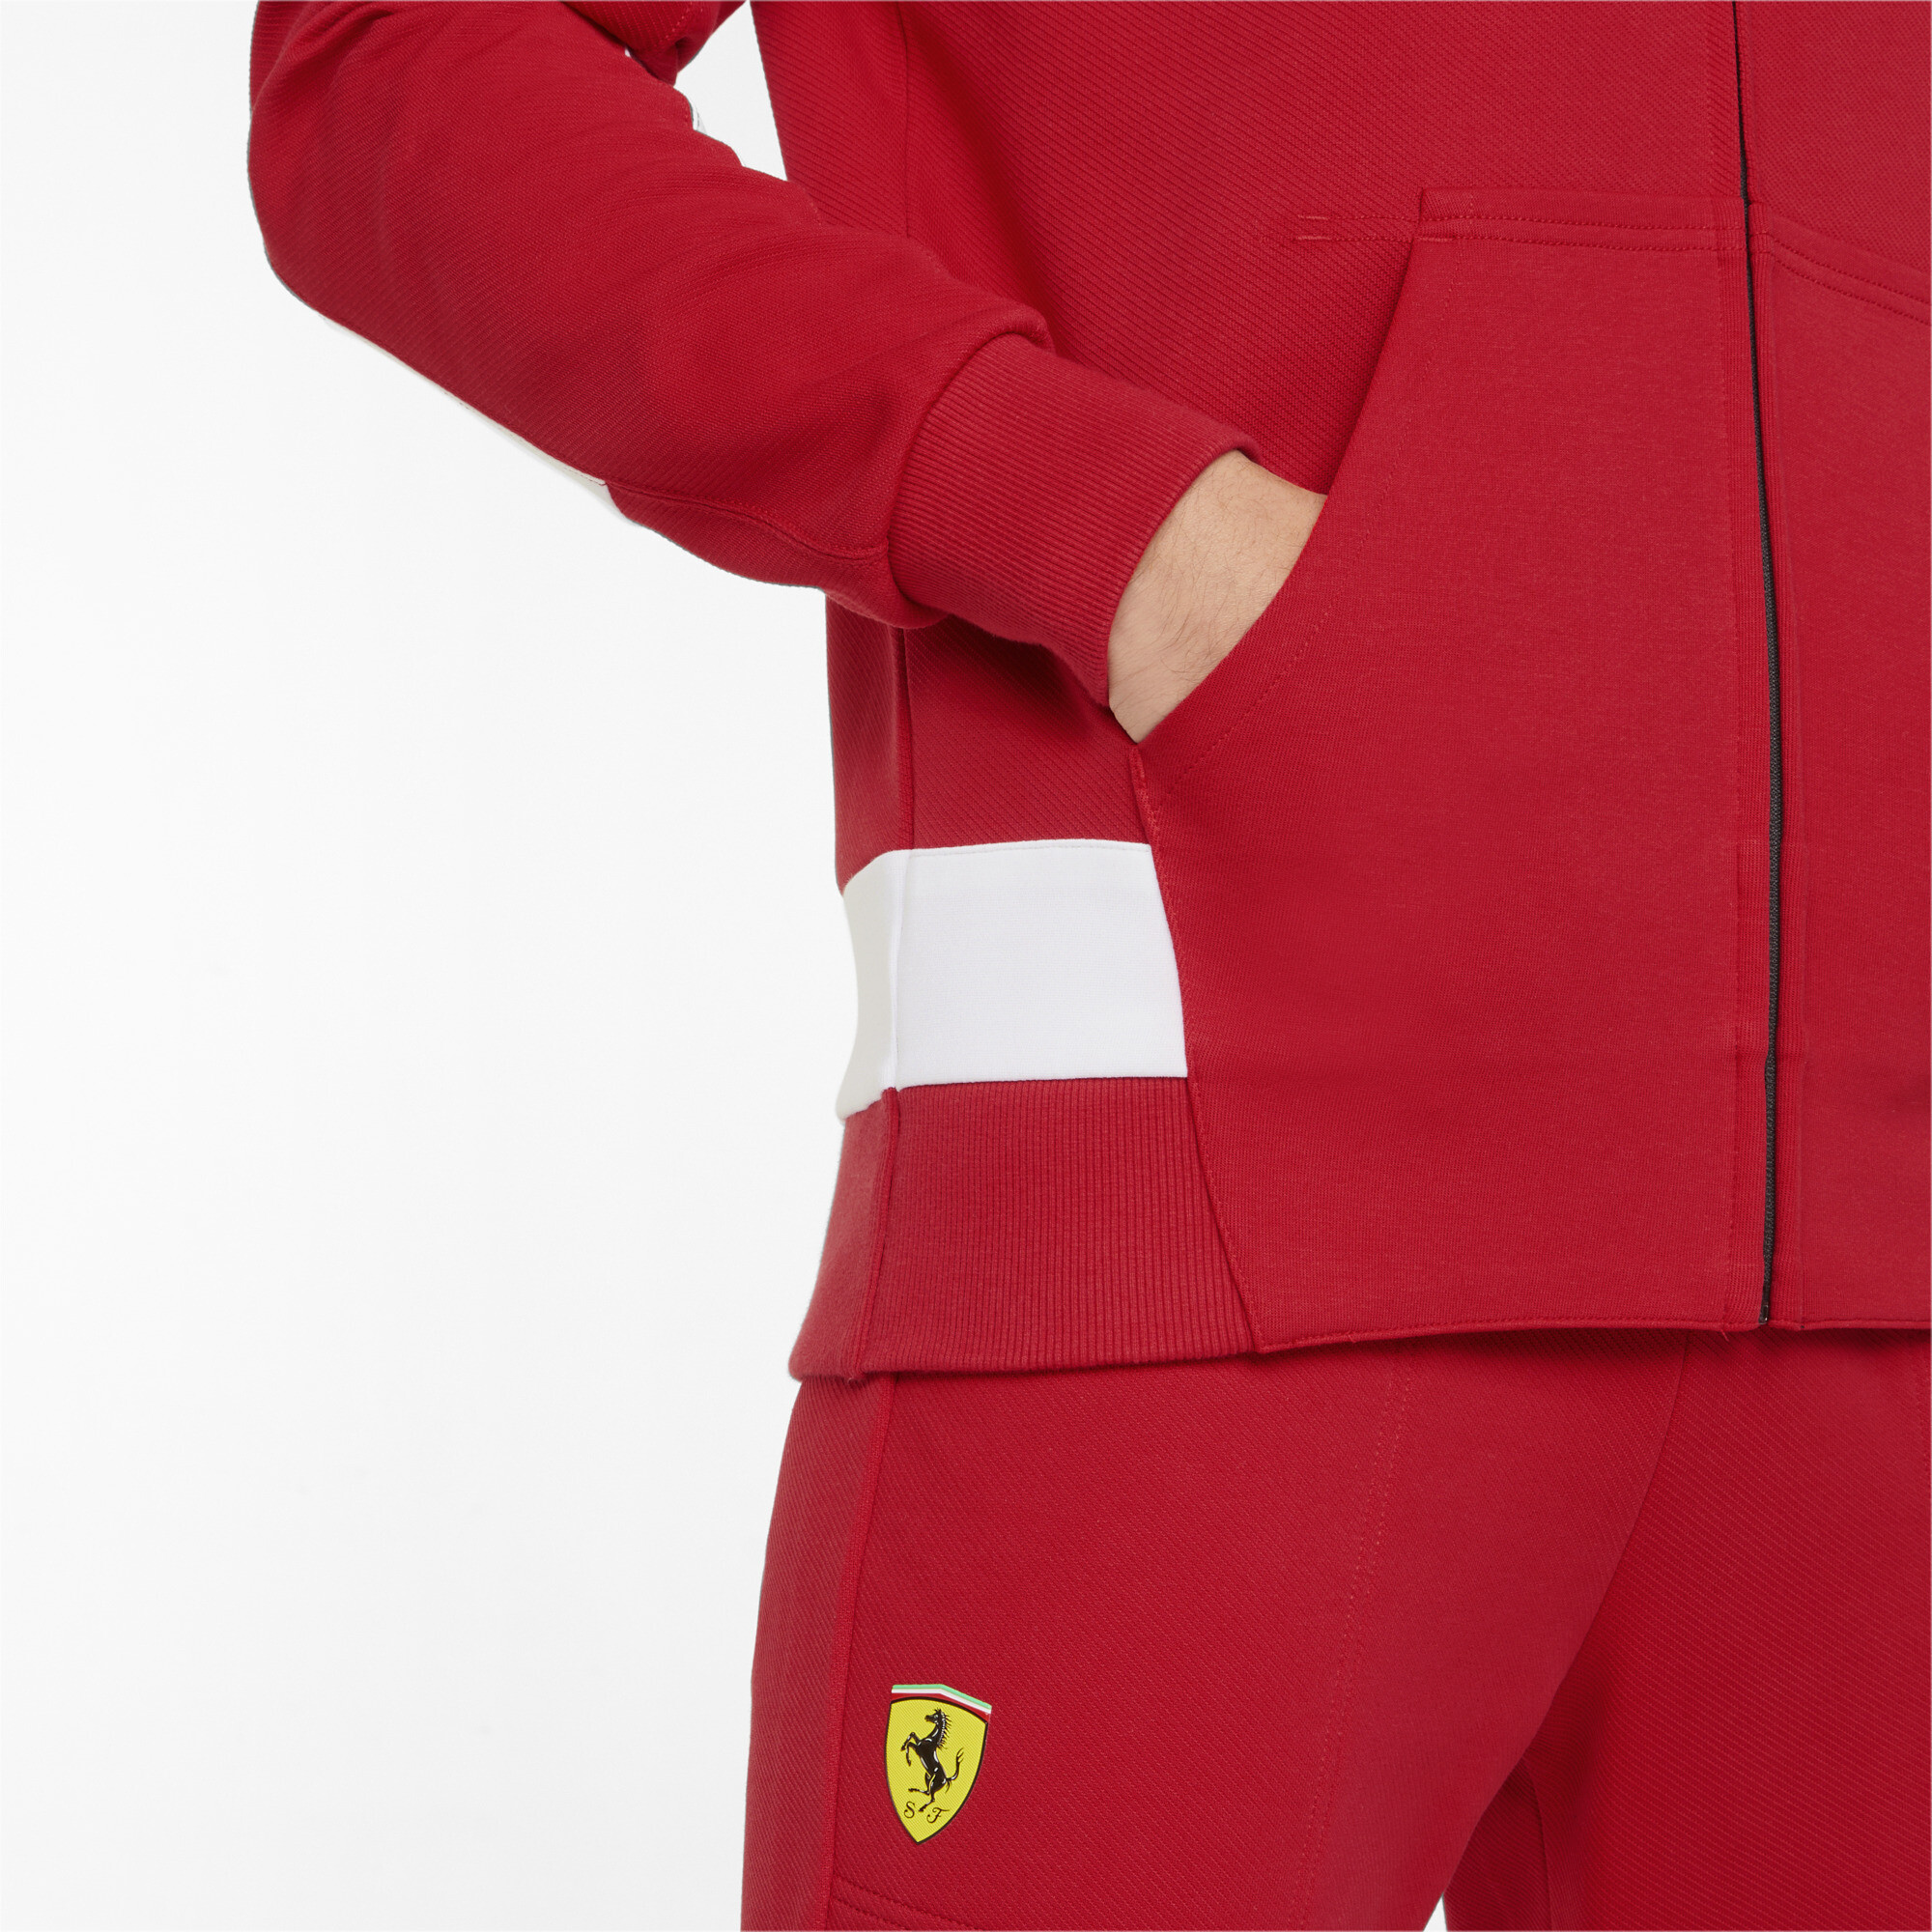  PUMA Hombres Scuderia Ferrari Team Softshell Chaqueta Atlética  Ropa de abrigo Casual - Rojo : Ropa, Zapatos y Joyería